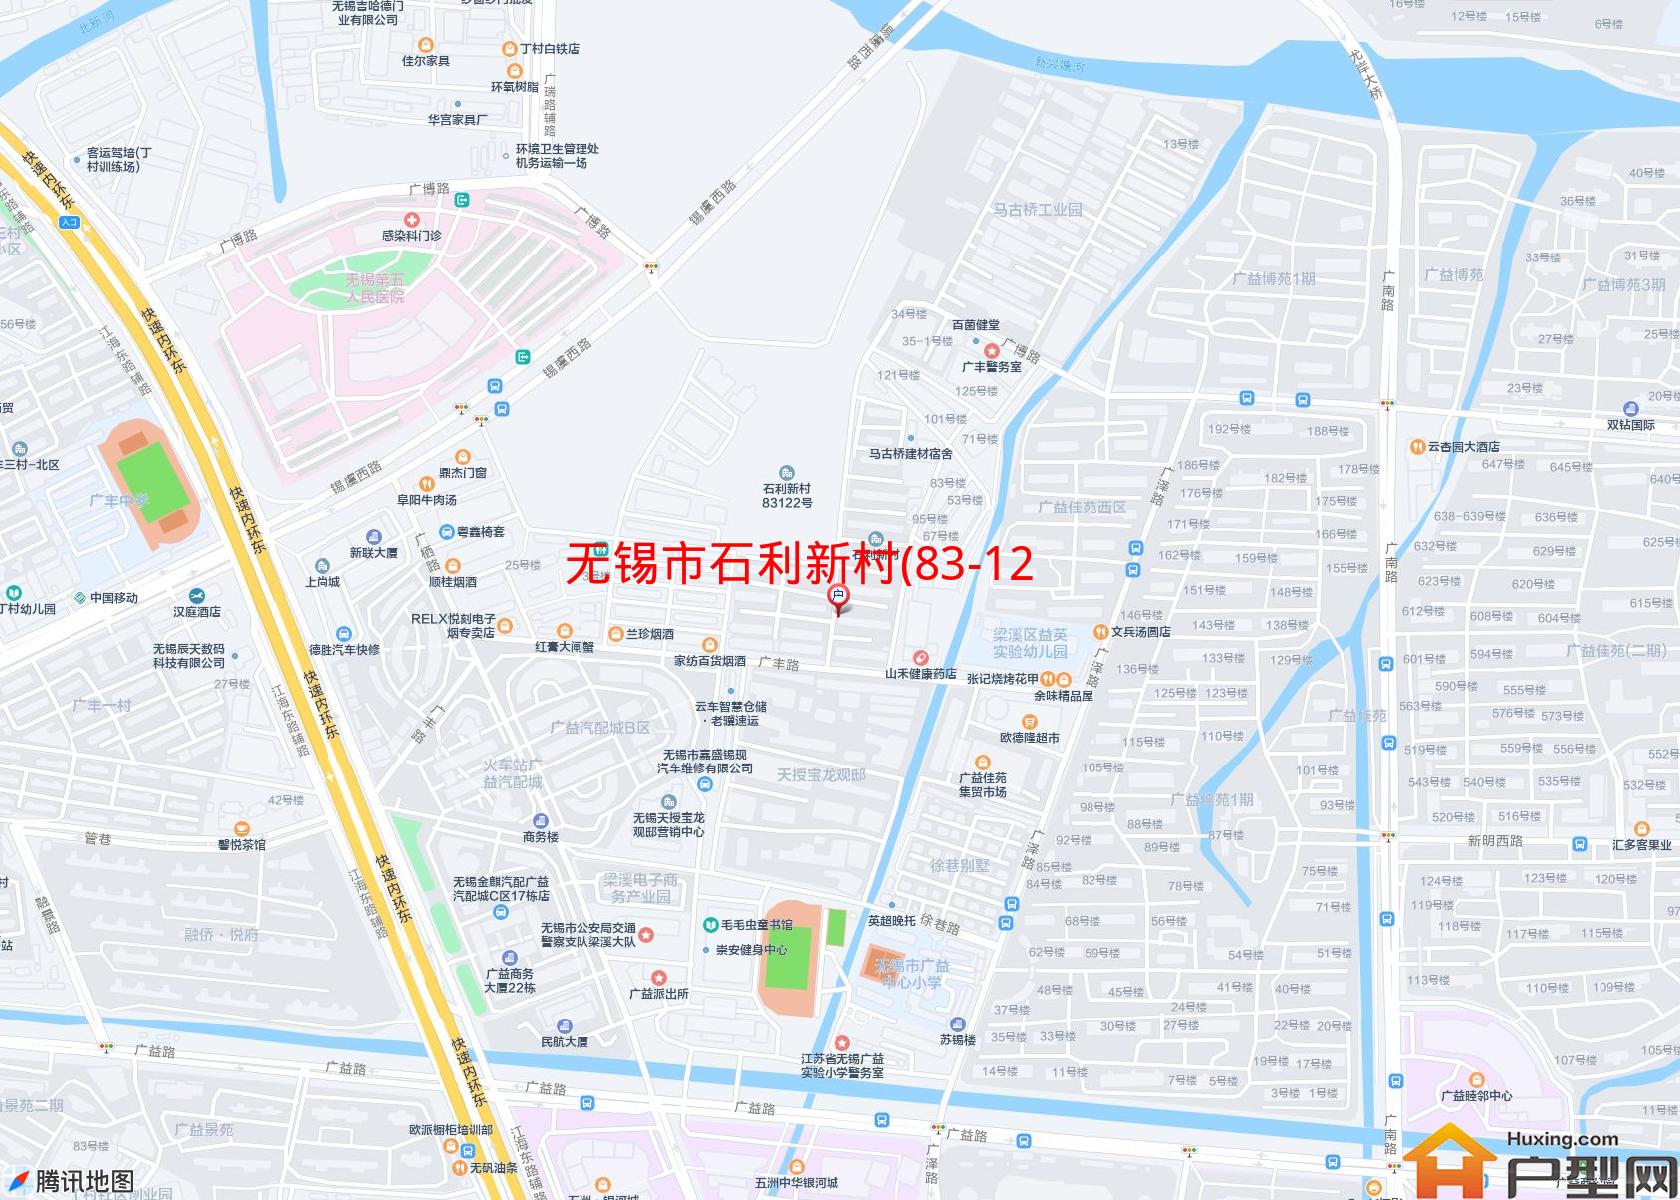 石利新村(83-122号)小区 - 户型网